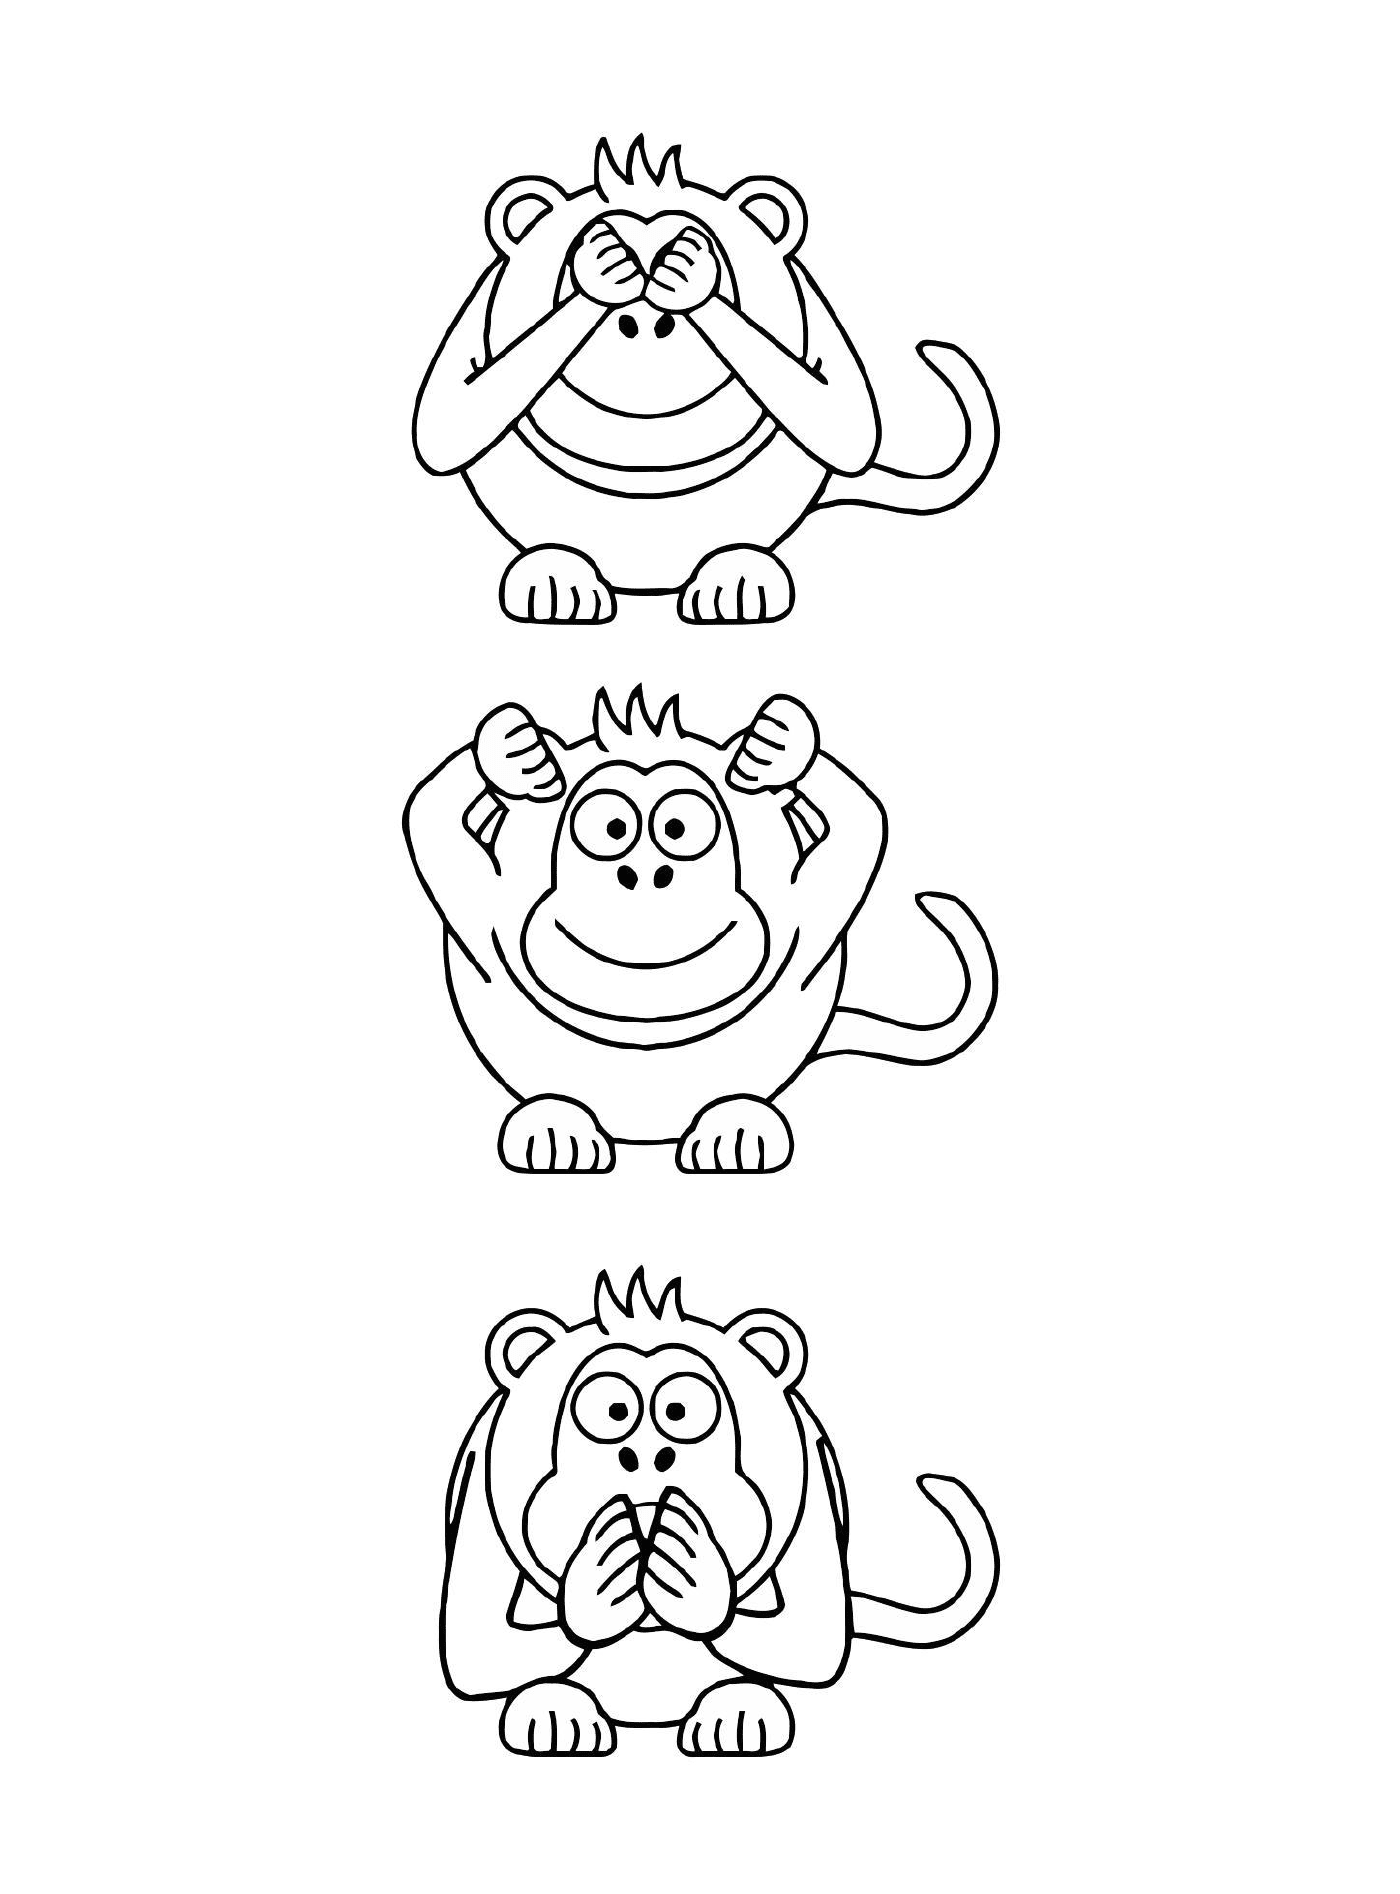  Три обезьяны с разными выражениями 